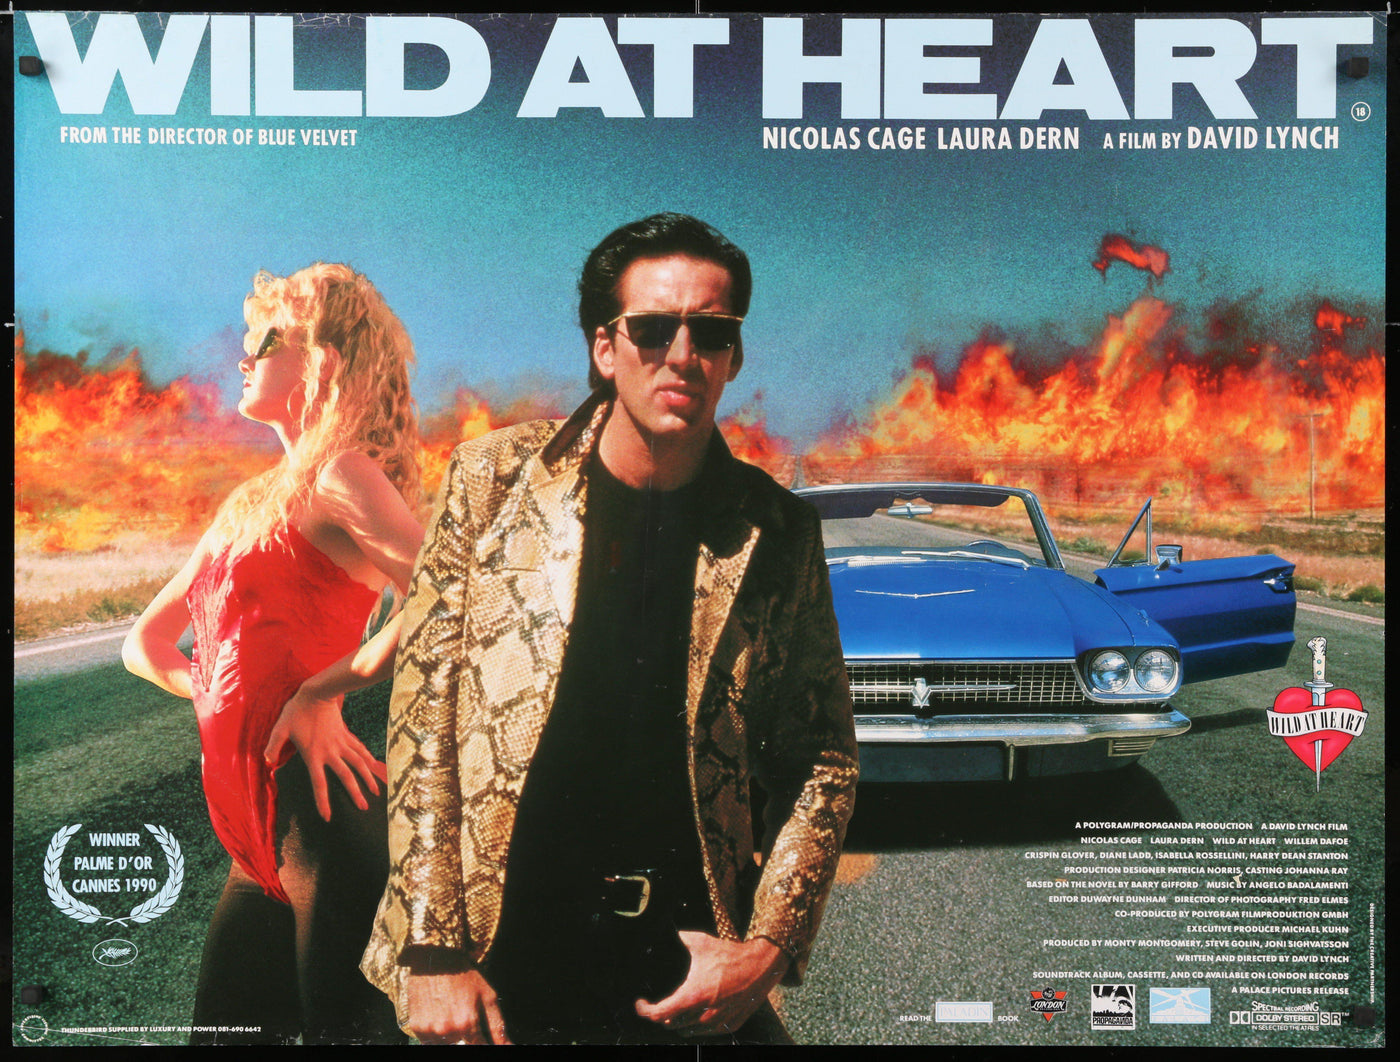 wild at heart movie summary